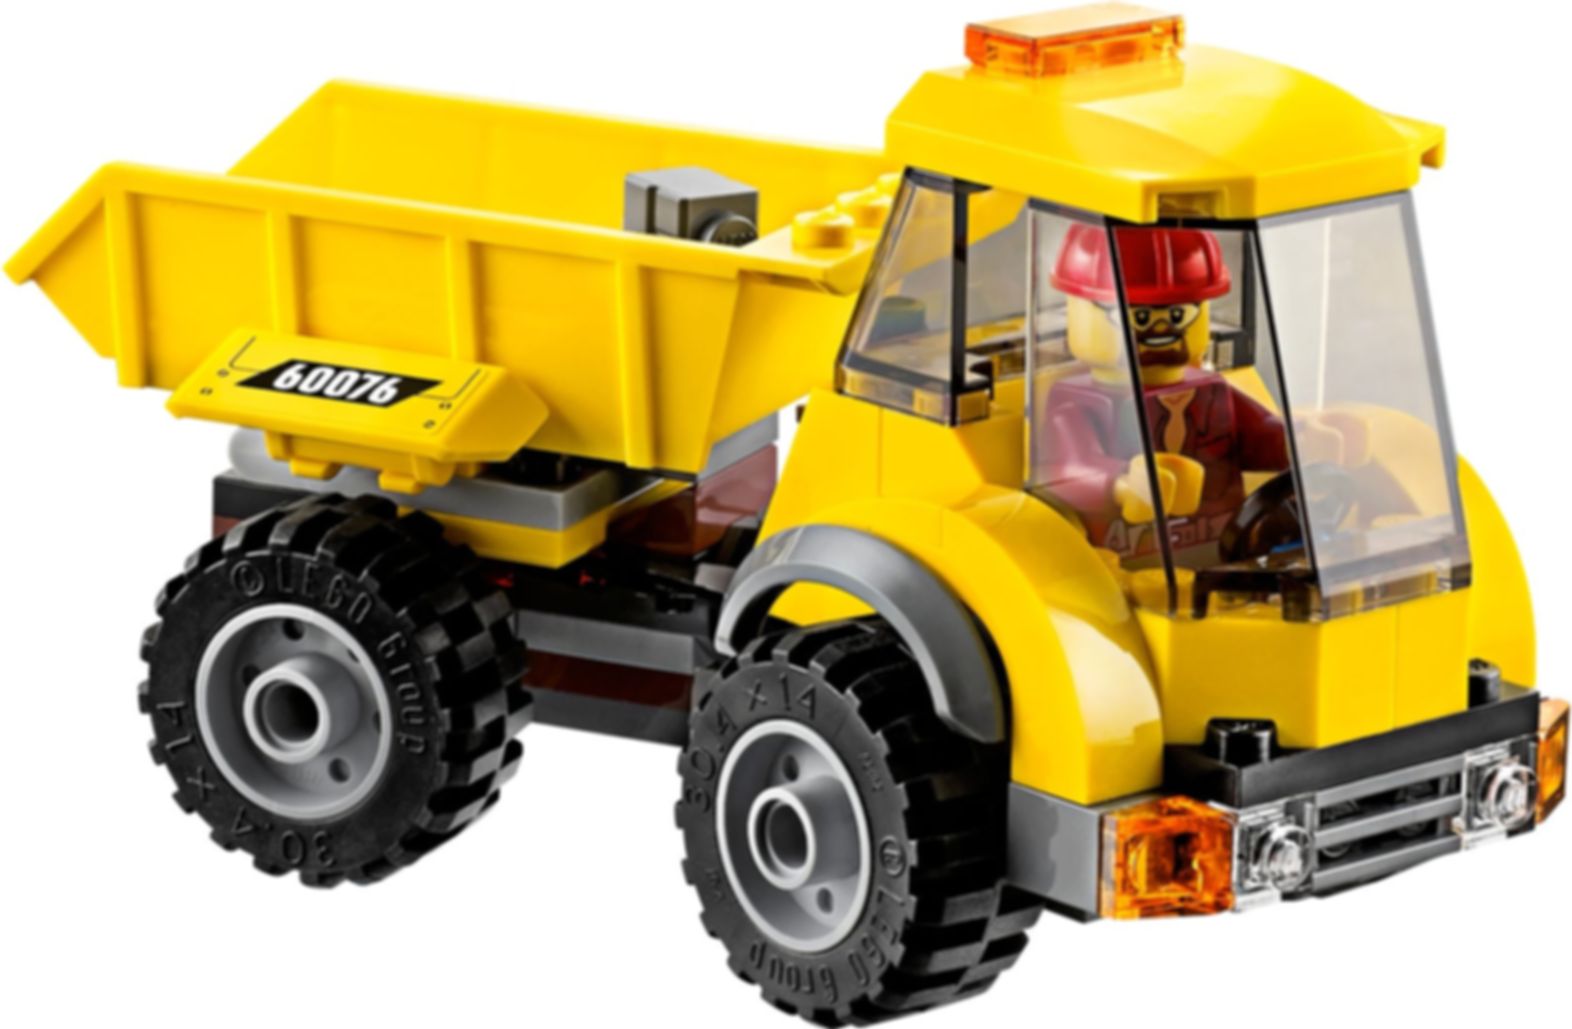 LEGO® City Abriss-Baustelle komponenten